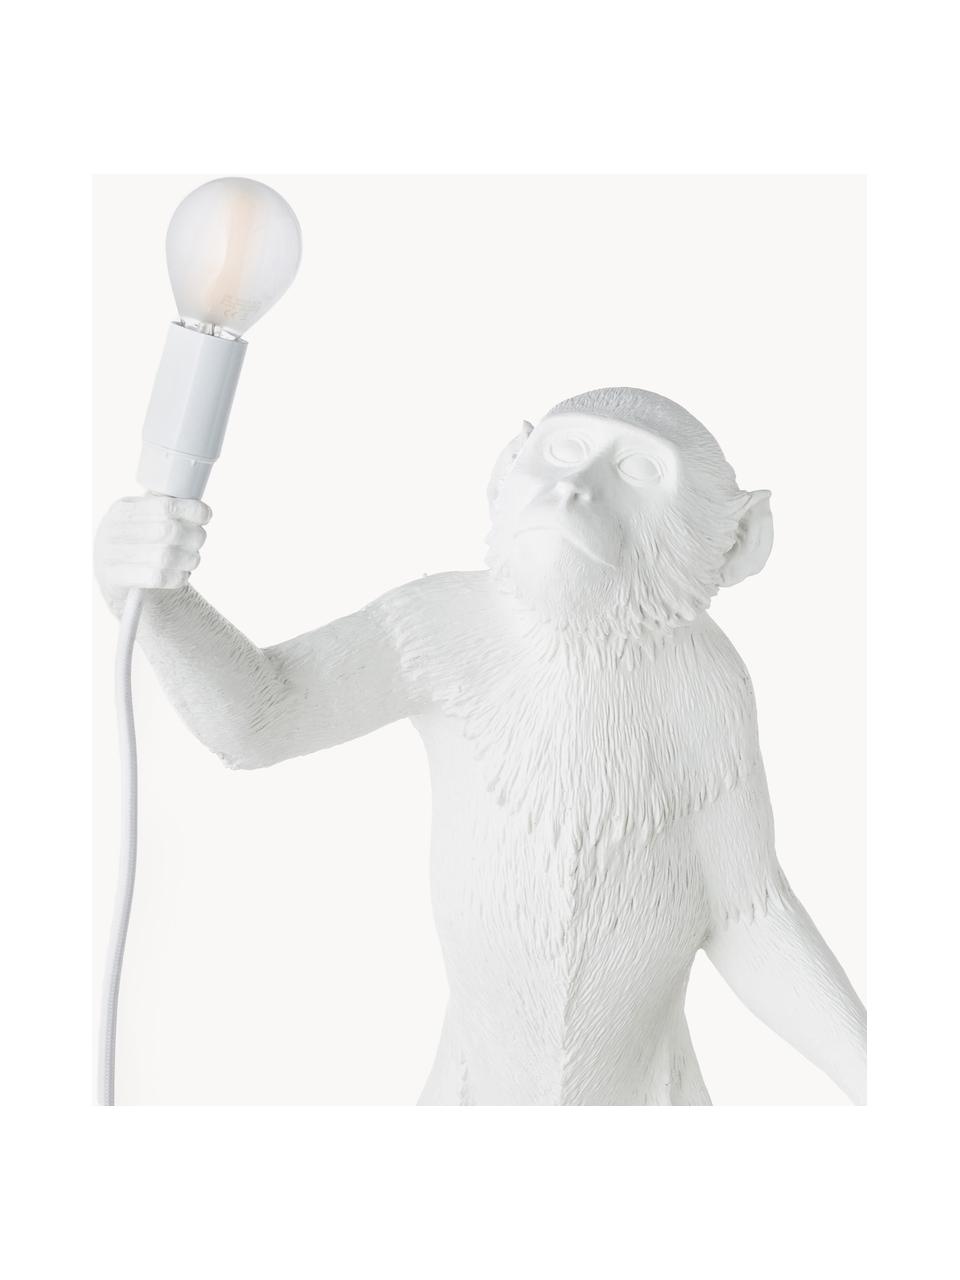 Große Design Tischlampe Monkey, Weiß, B 46 x H 54 cm